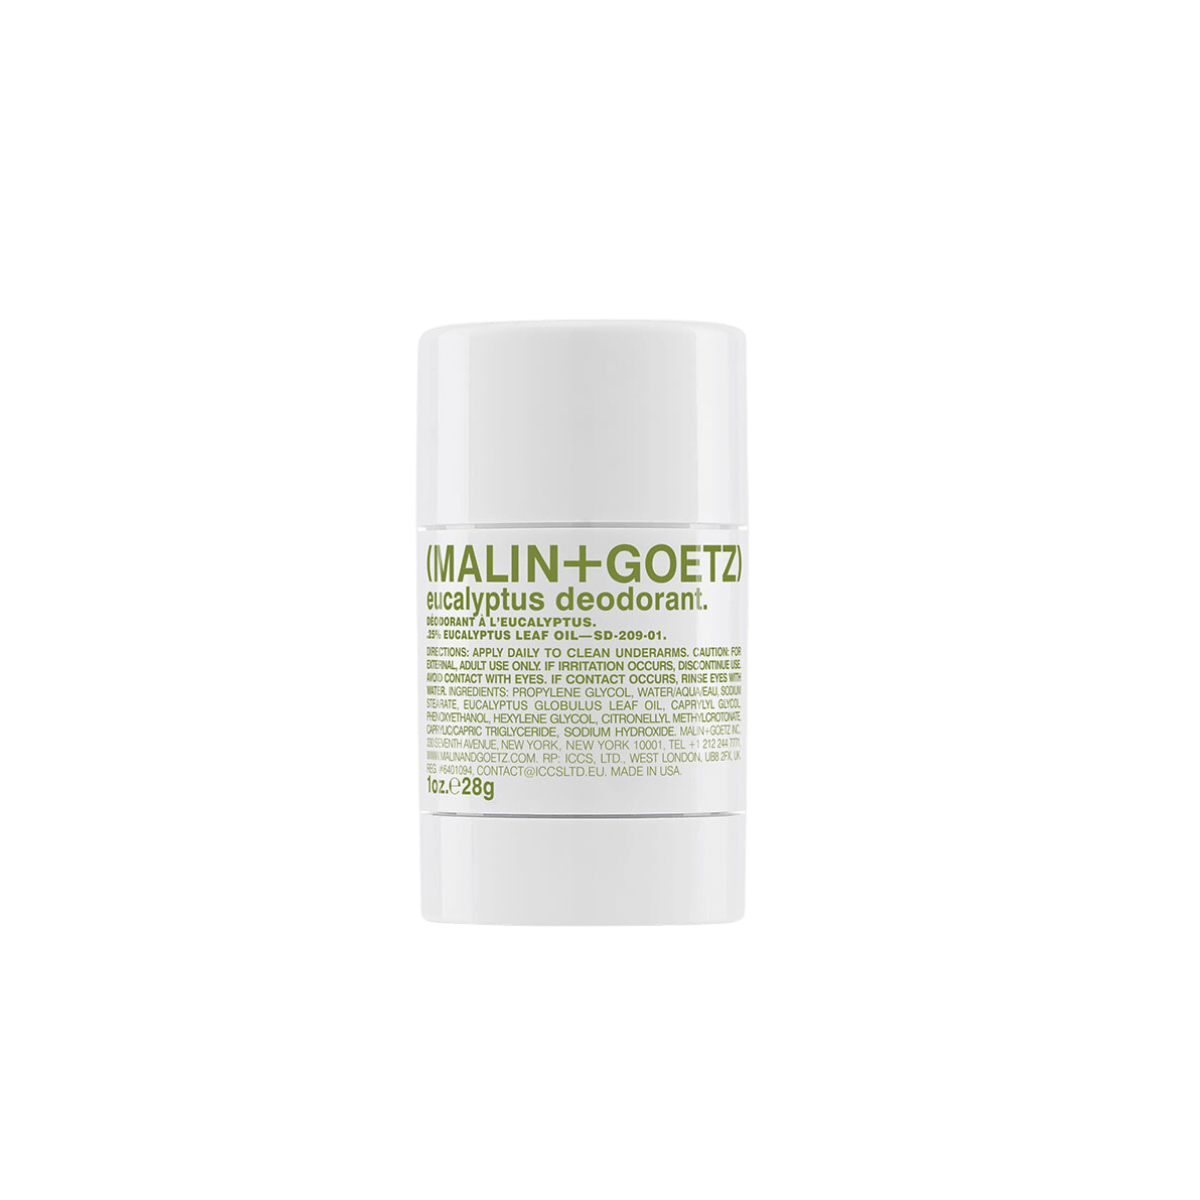 Afbeelding van Eucalyptus deodorant mini van het merk Malin + Goetz